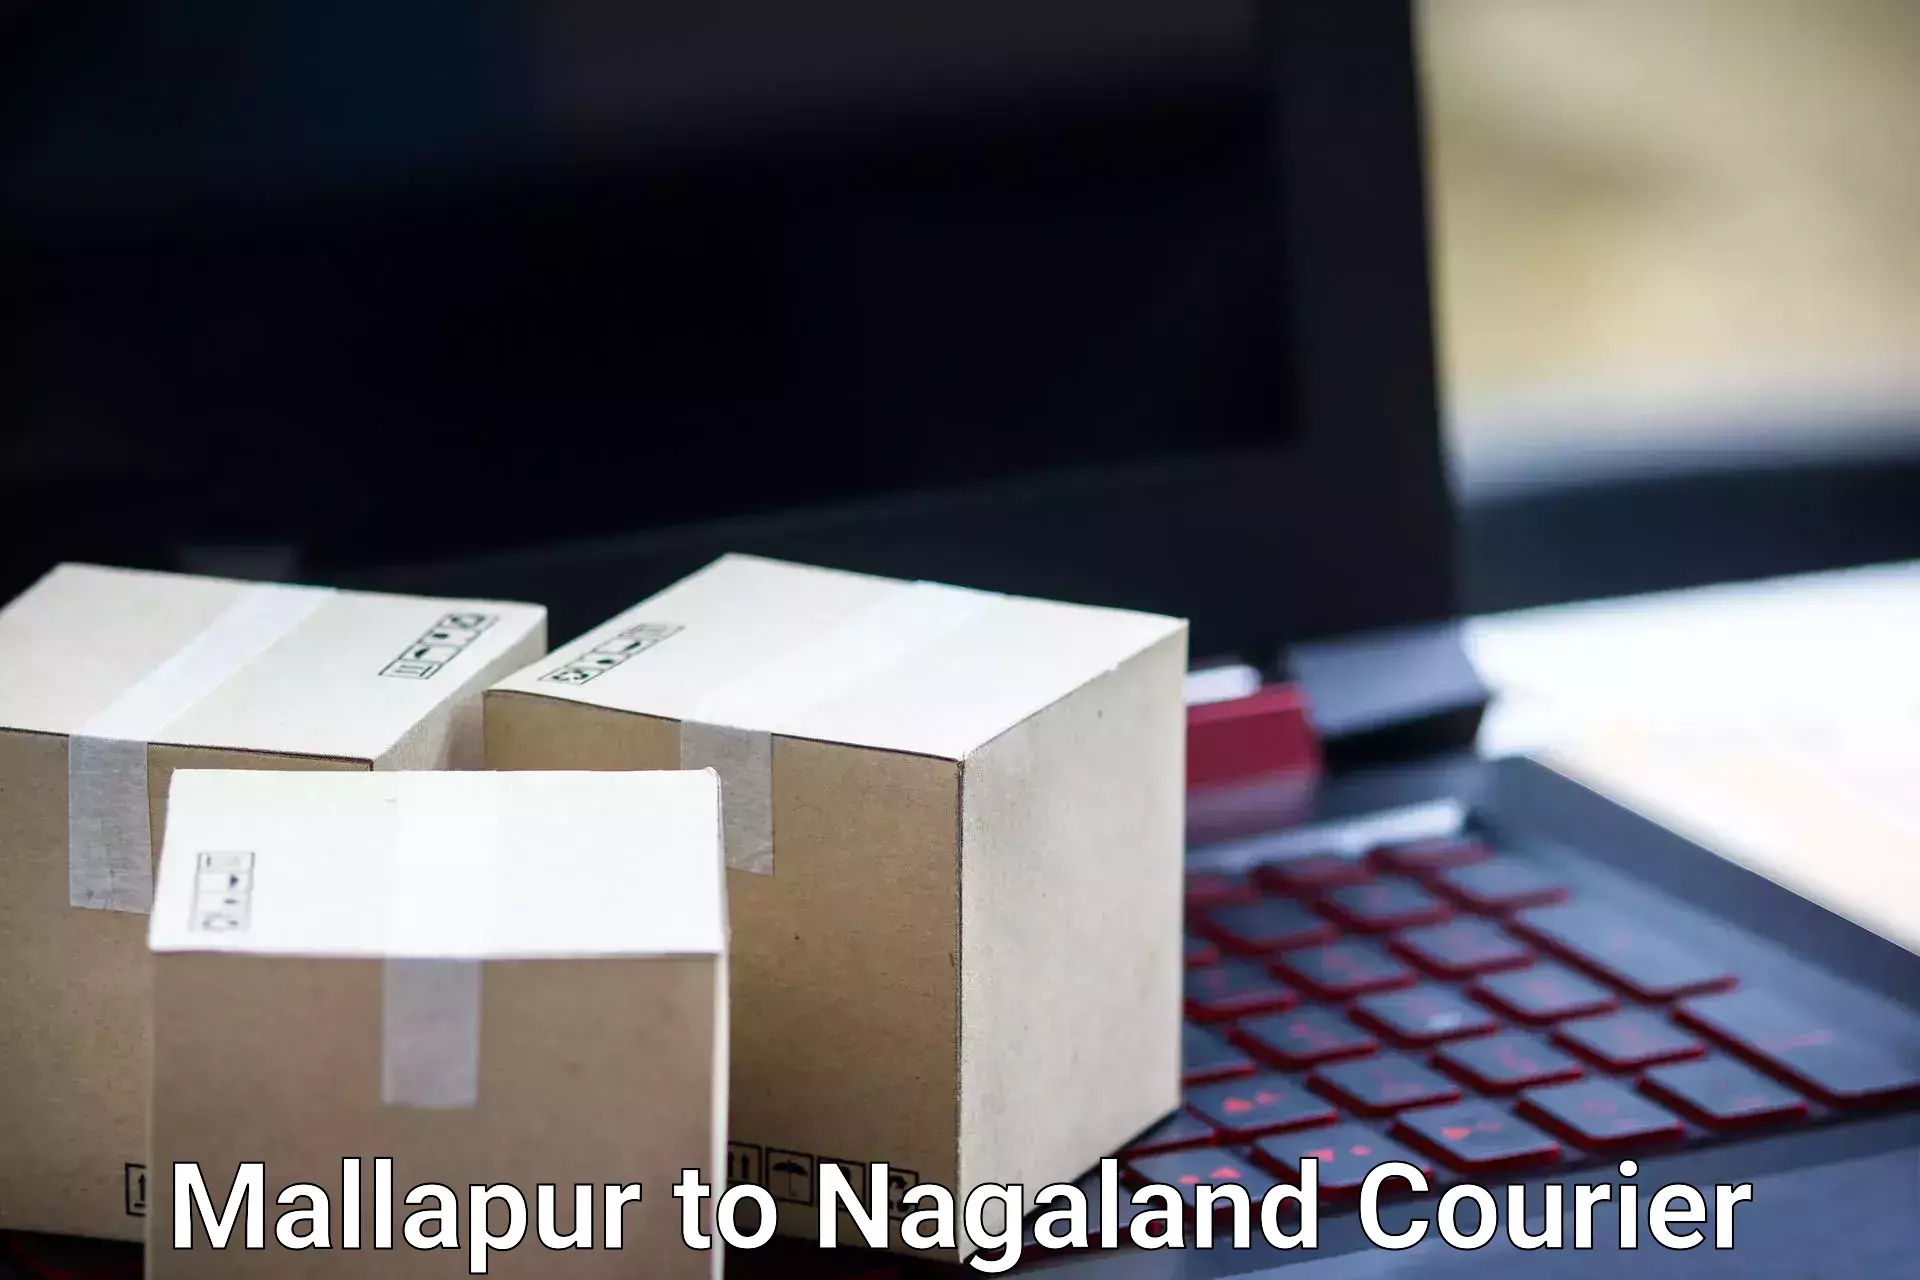 Baggage shipping experts Mallapur to Nagaland